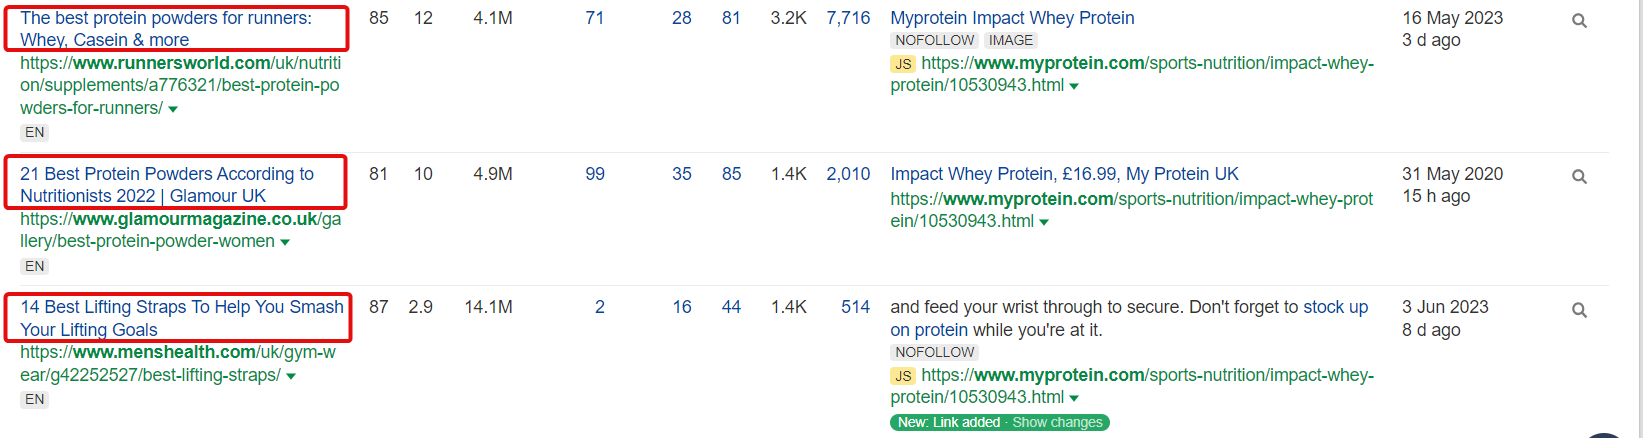 Myprotein’s link profile.